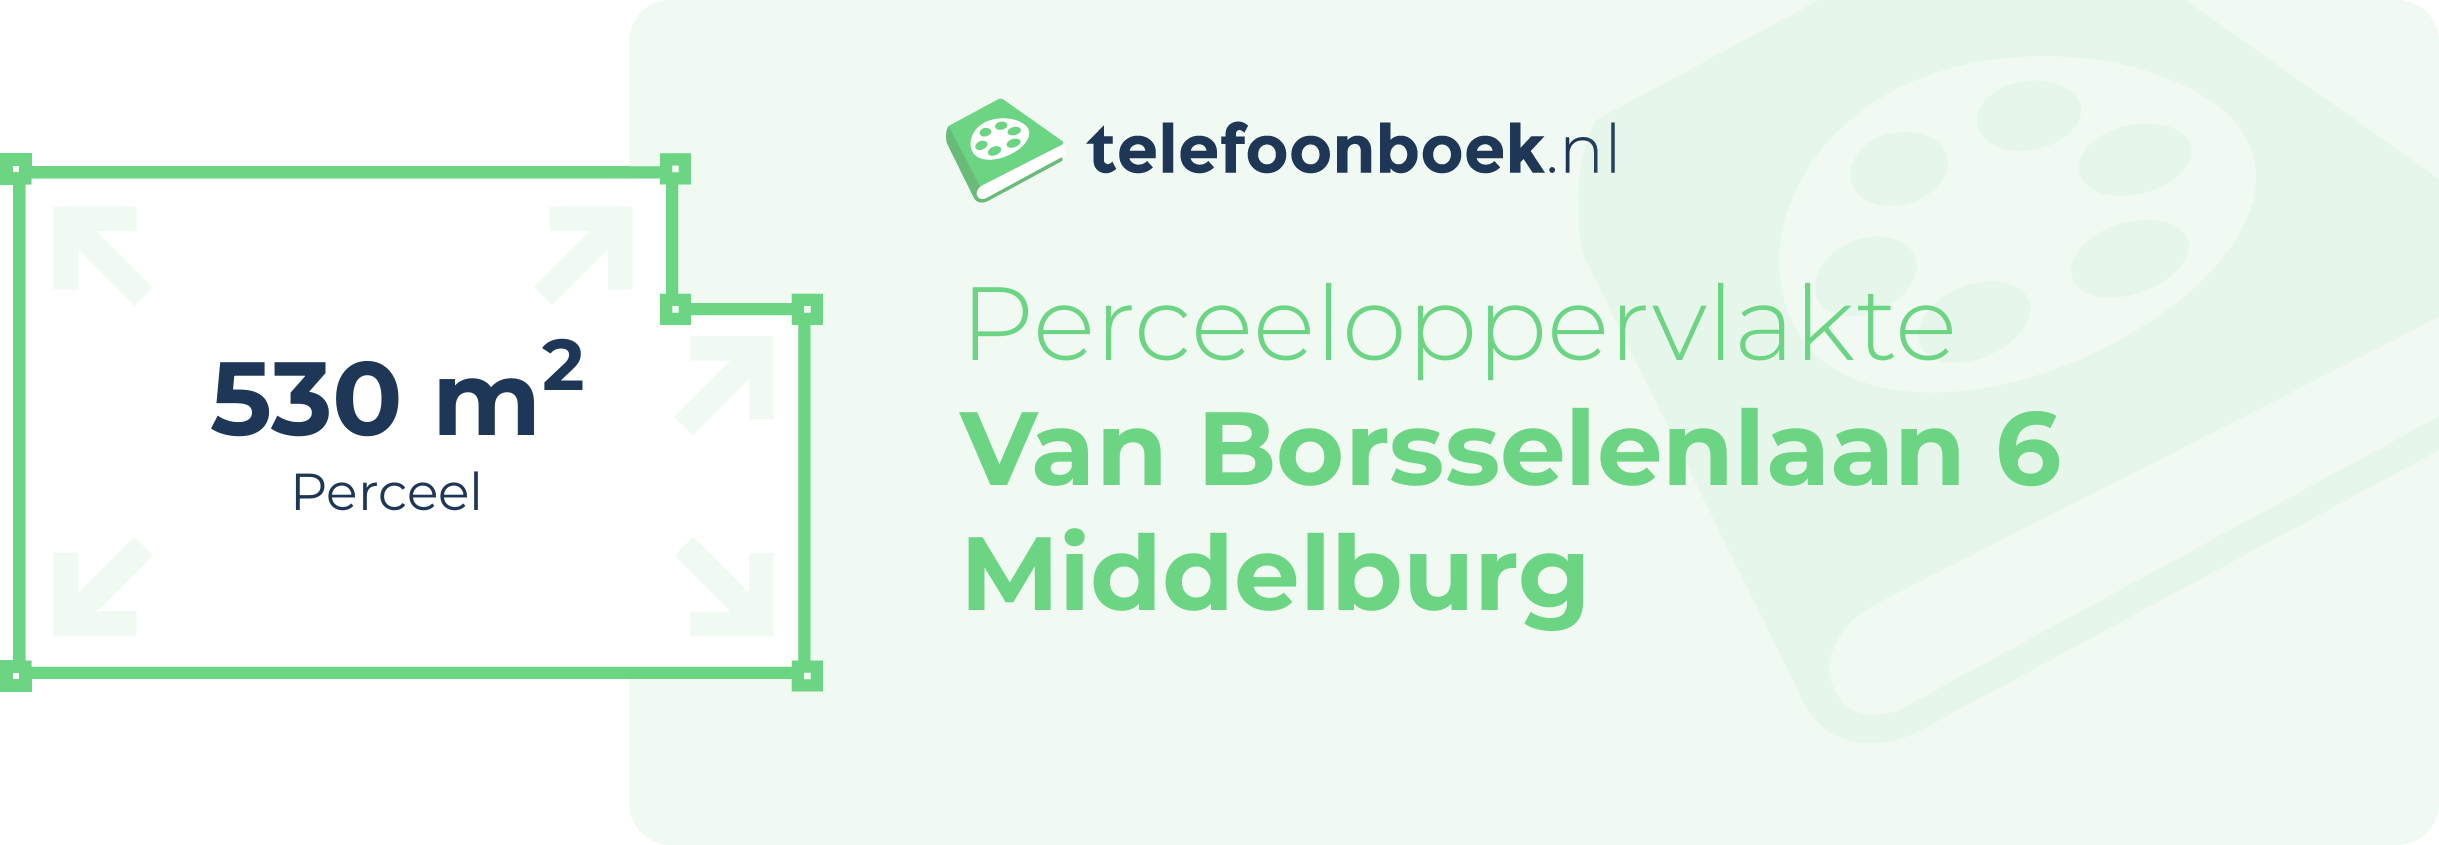 Perceeloppervlakte Van Borsselenlaan 6 Middelburg